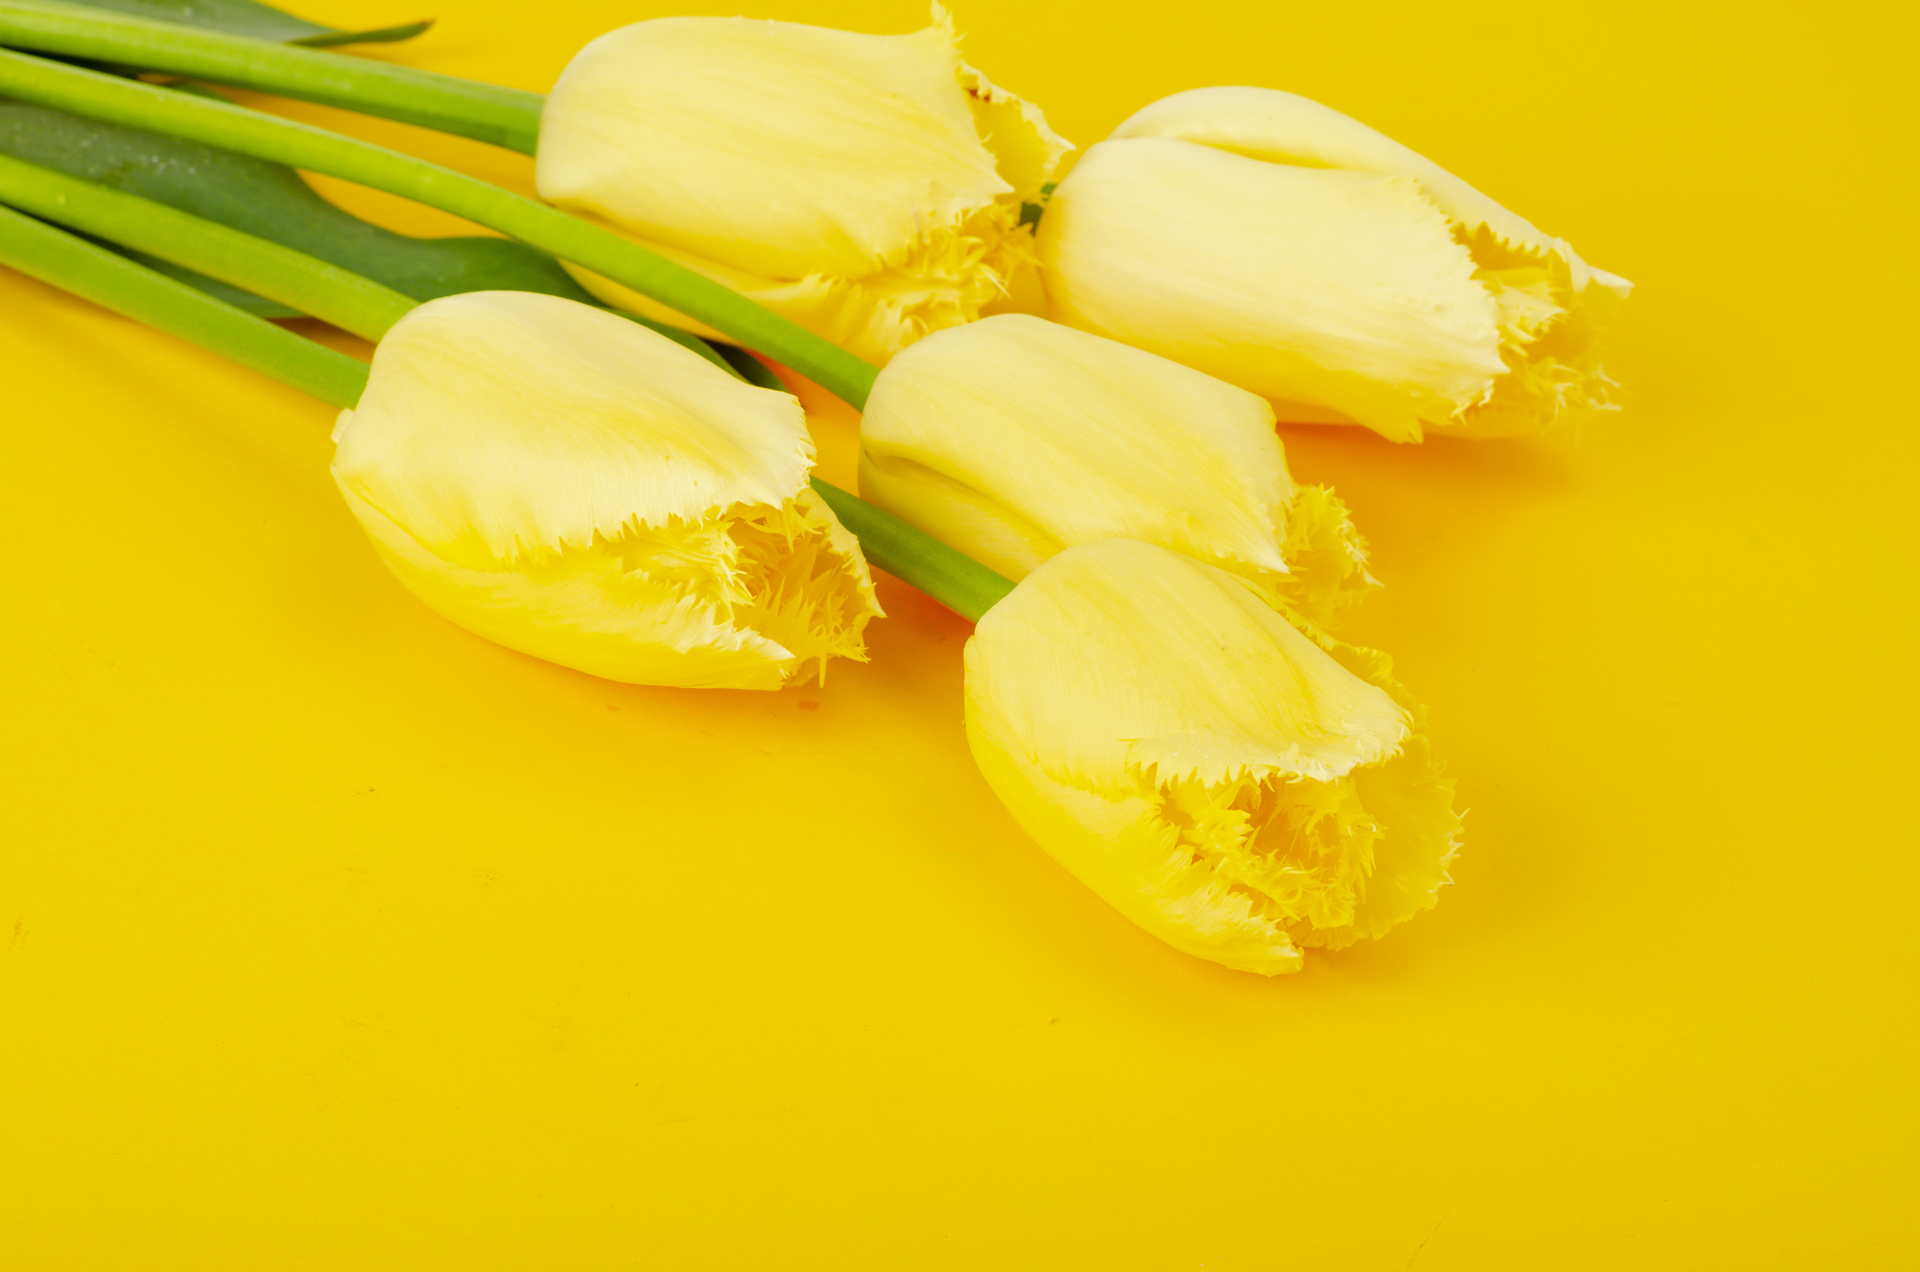 Na tym ujmującym obrazku możemy podziwiać żółte tulipany, które zachwycają swoim promiennym kolorem na żółtym tle. Ich jasnożółte płatki rozświetlają całą kompozycję, emanując radością i energią. Kwiaty te dodają otoczeniu aurę witalności i optymizmu, tworząc wspaniałe zestawienie kolorystyczne